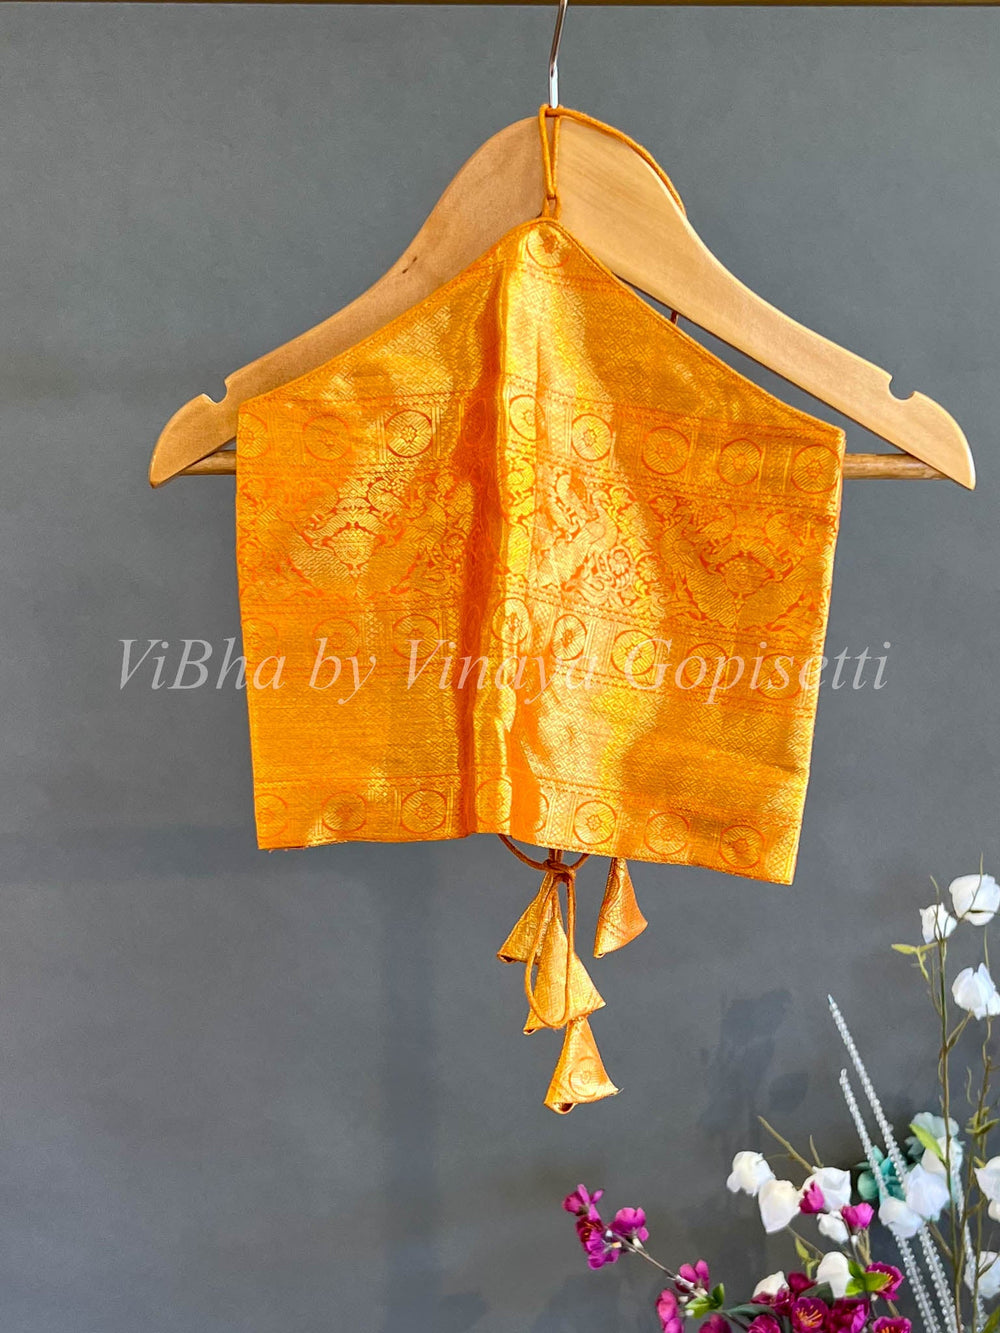 Kids Wear - Orange Tissue Kanchi Silk Skirt And Top